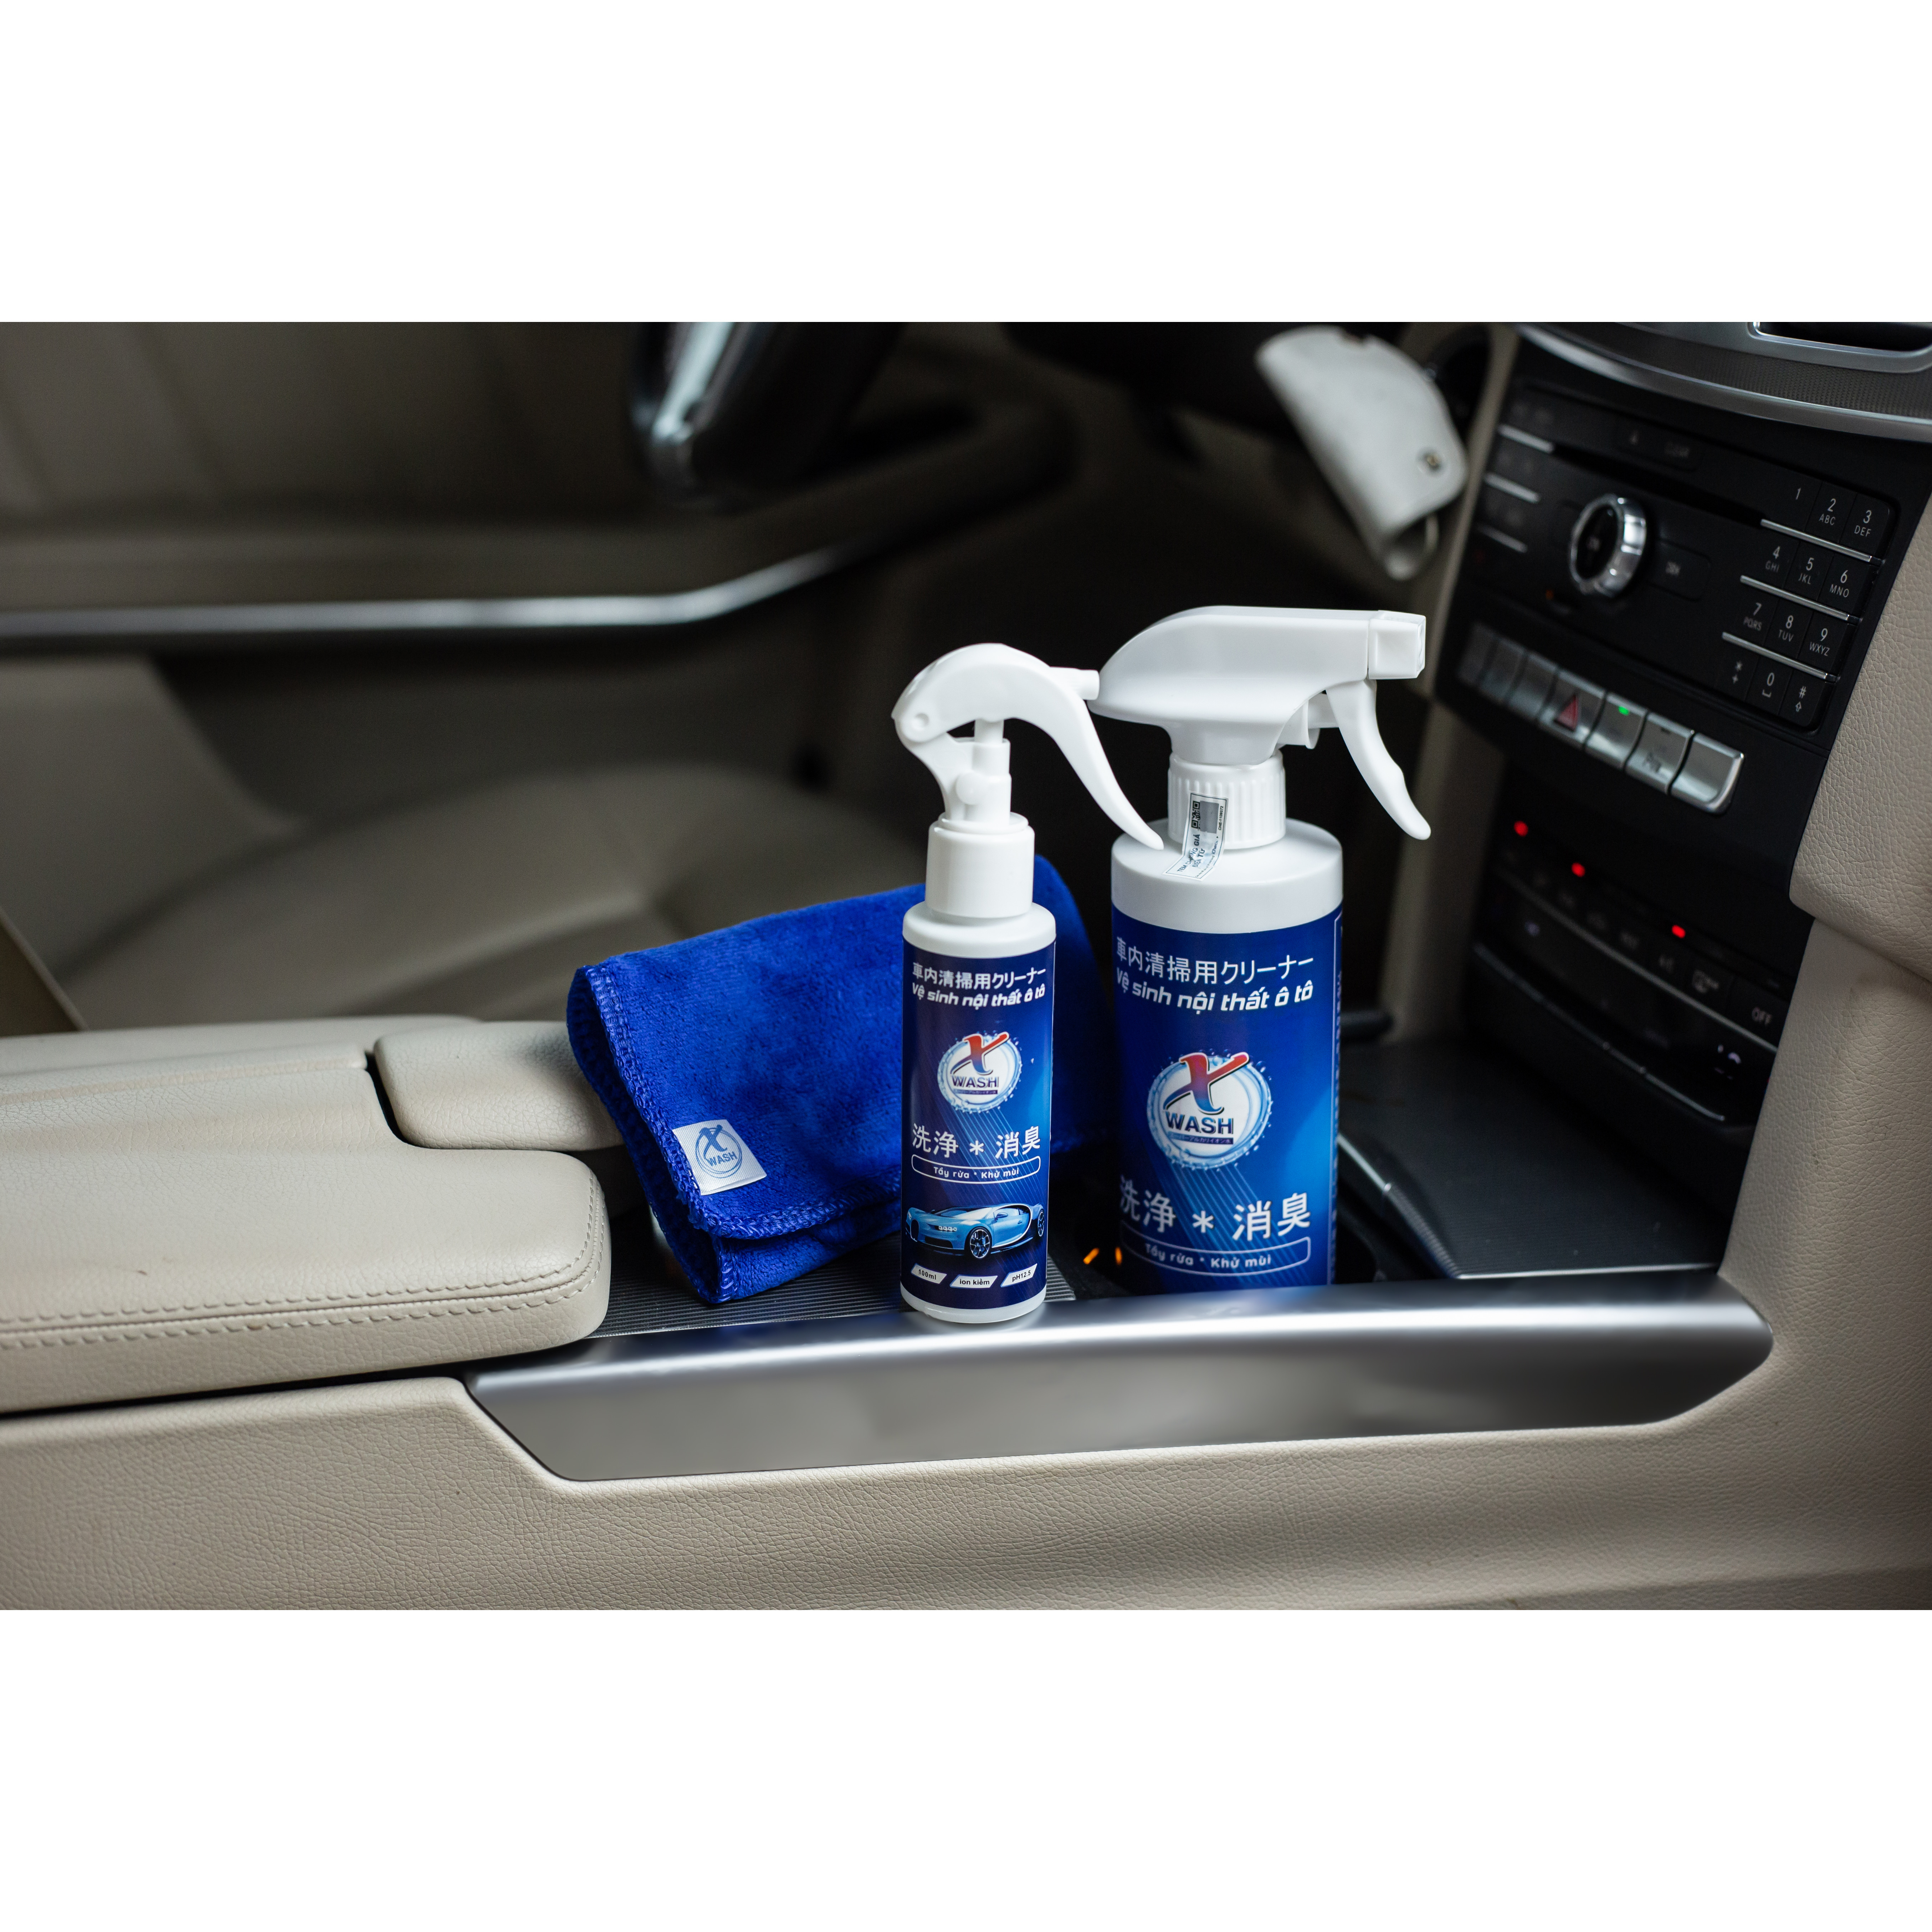 Bộ Xwash For Car - Vệ sinh không hóa chất - Bảo vệ nội thất ô tô - Không gây mùi độc hại tặng kèm khăn